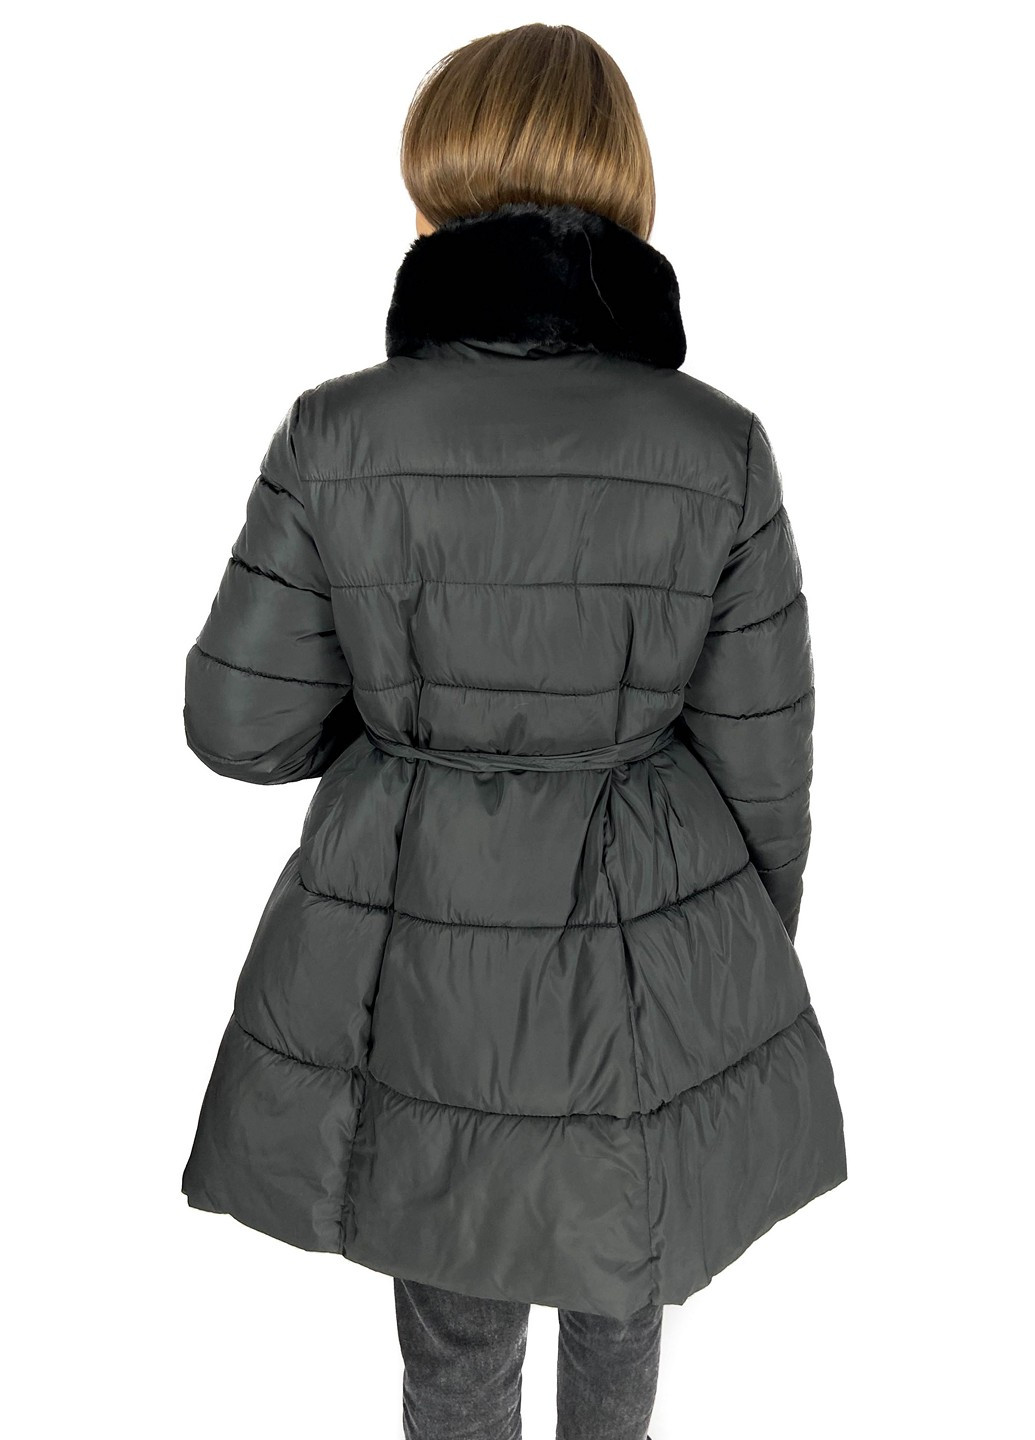 Черная зимняя куртка Mtp